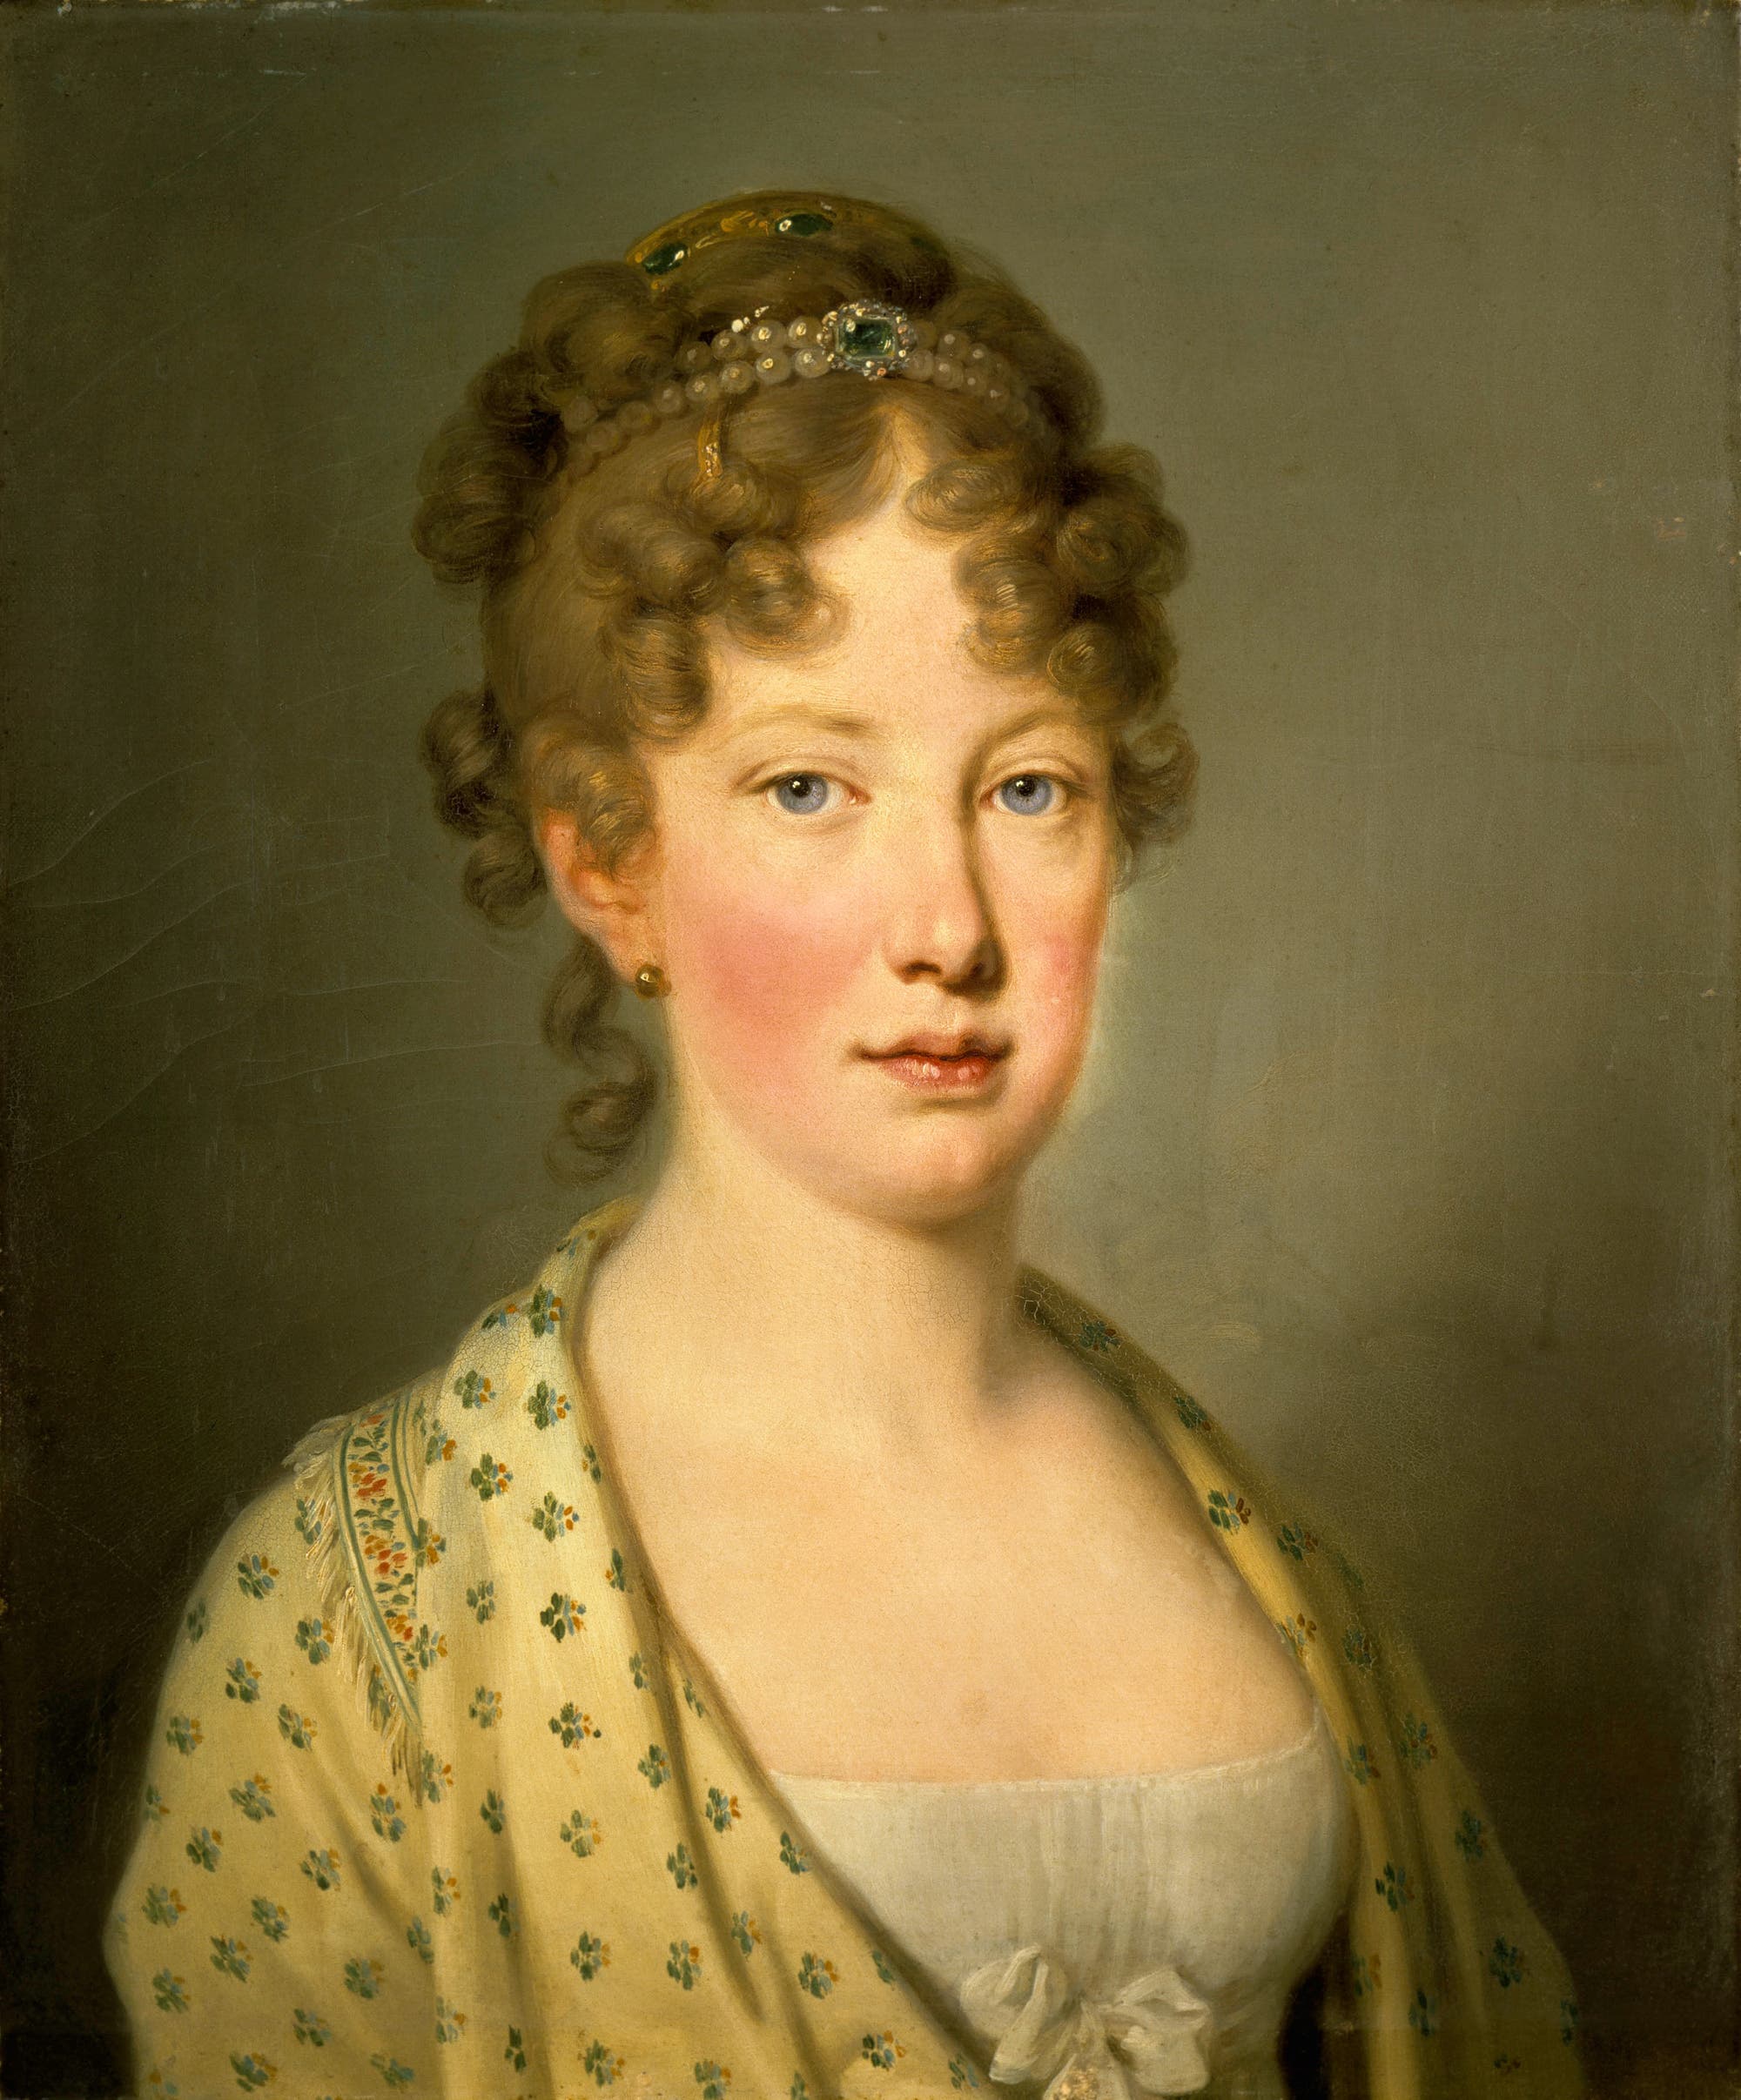 Porträt der Habsburgerin Maria Leopoldine von Österreich und späteren Kaiserin von Brasilien.